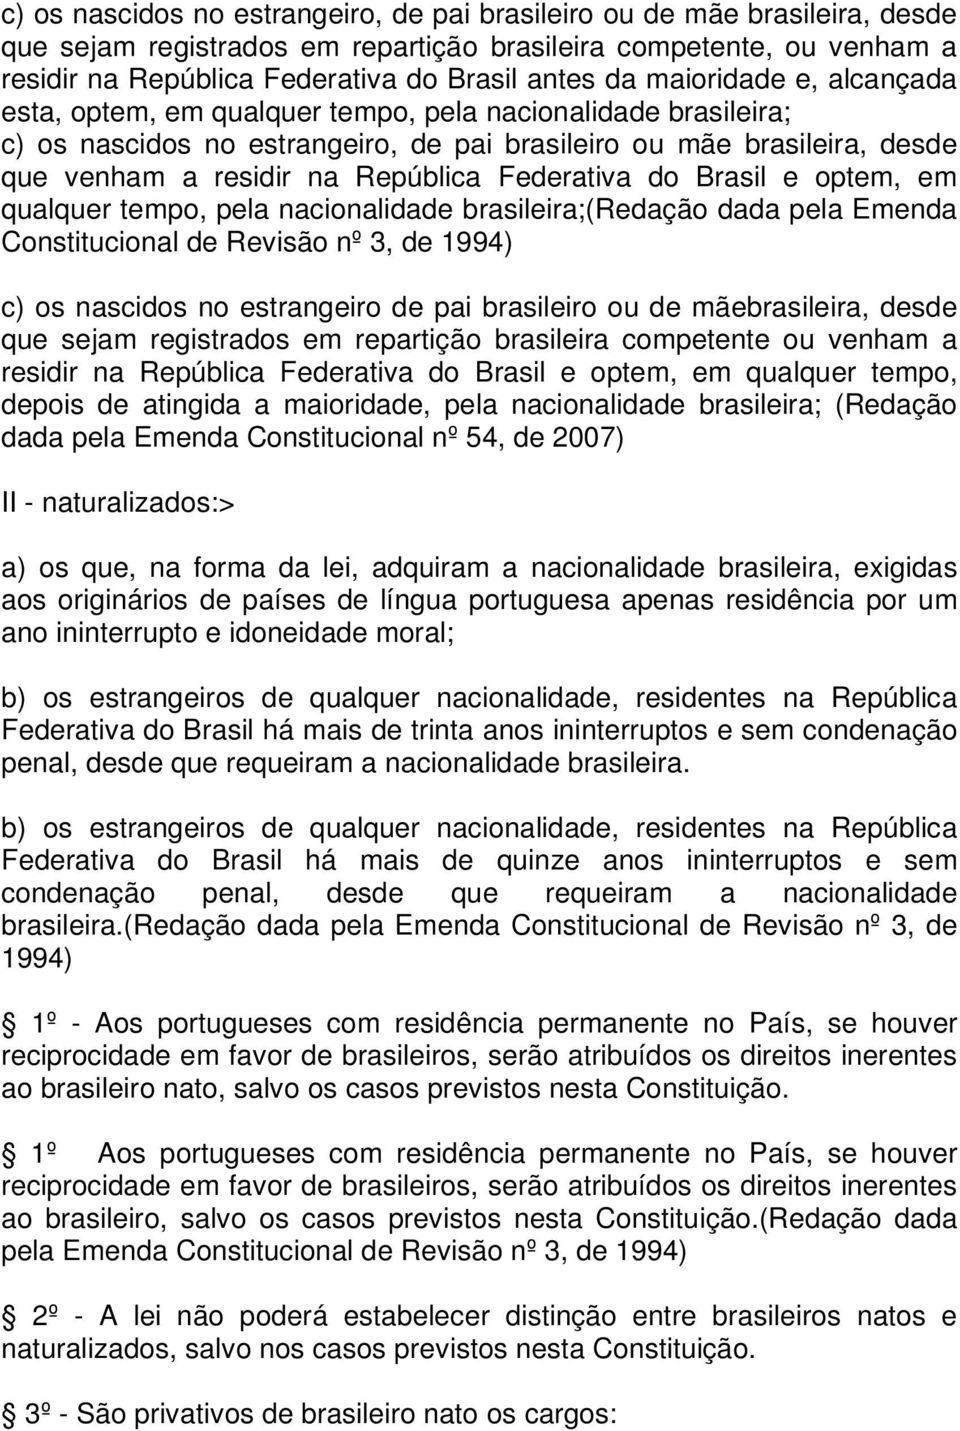 Federativa do Brasil e optem, em qualquer tempo, pela nacionalidade brasileira;(redação dada pela Emenda Constitucional de Revisão nº 3, de 1994) c) os nascidos no estrangeiro de pai brasileiro ou de